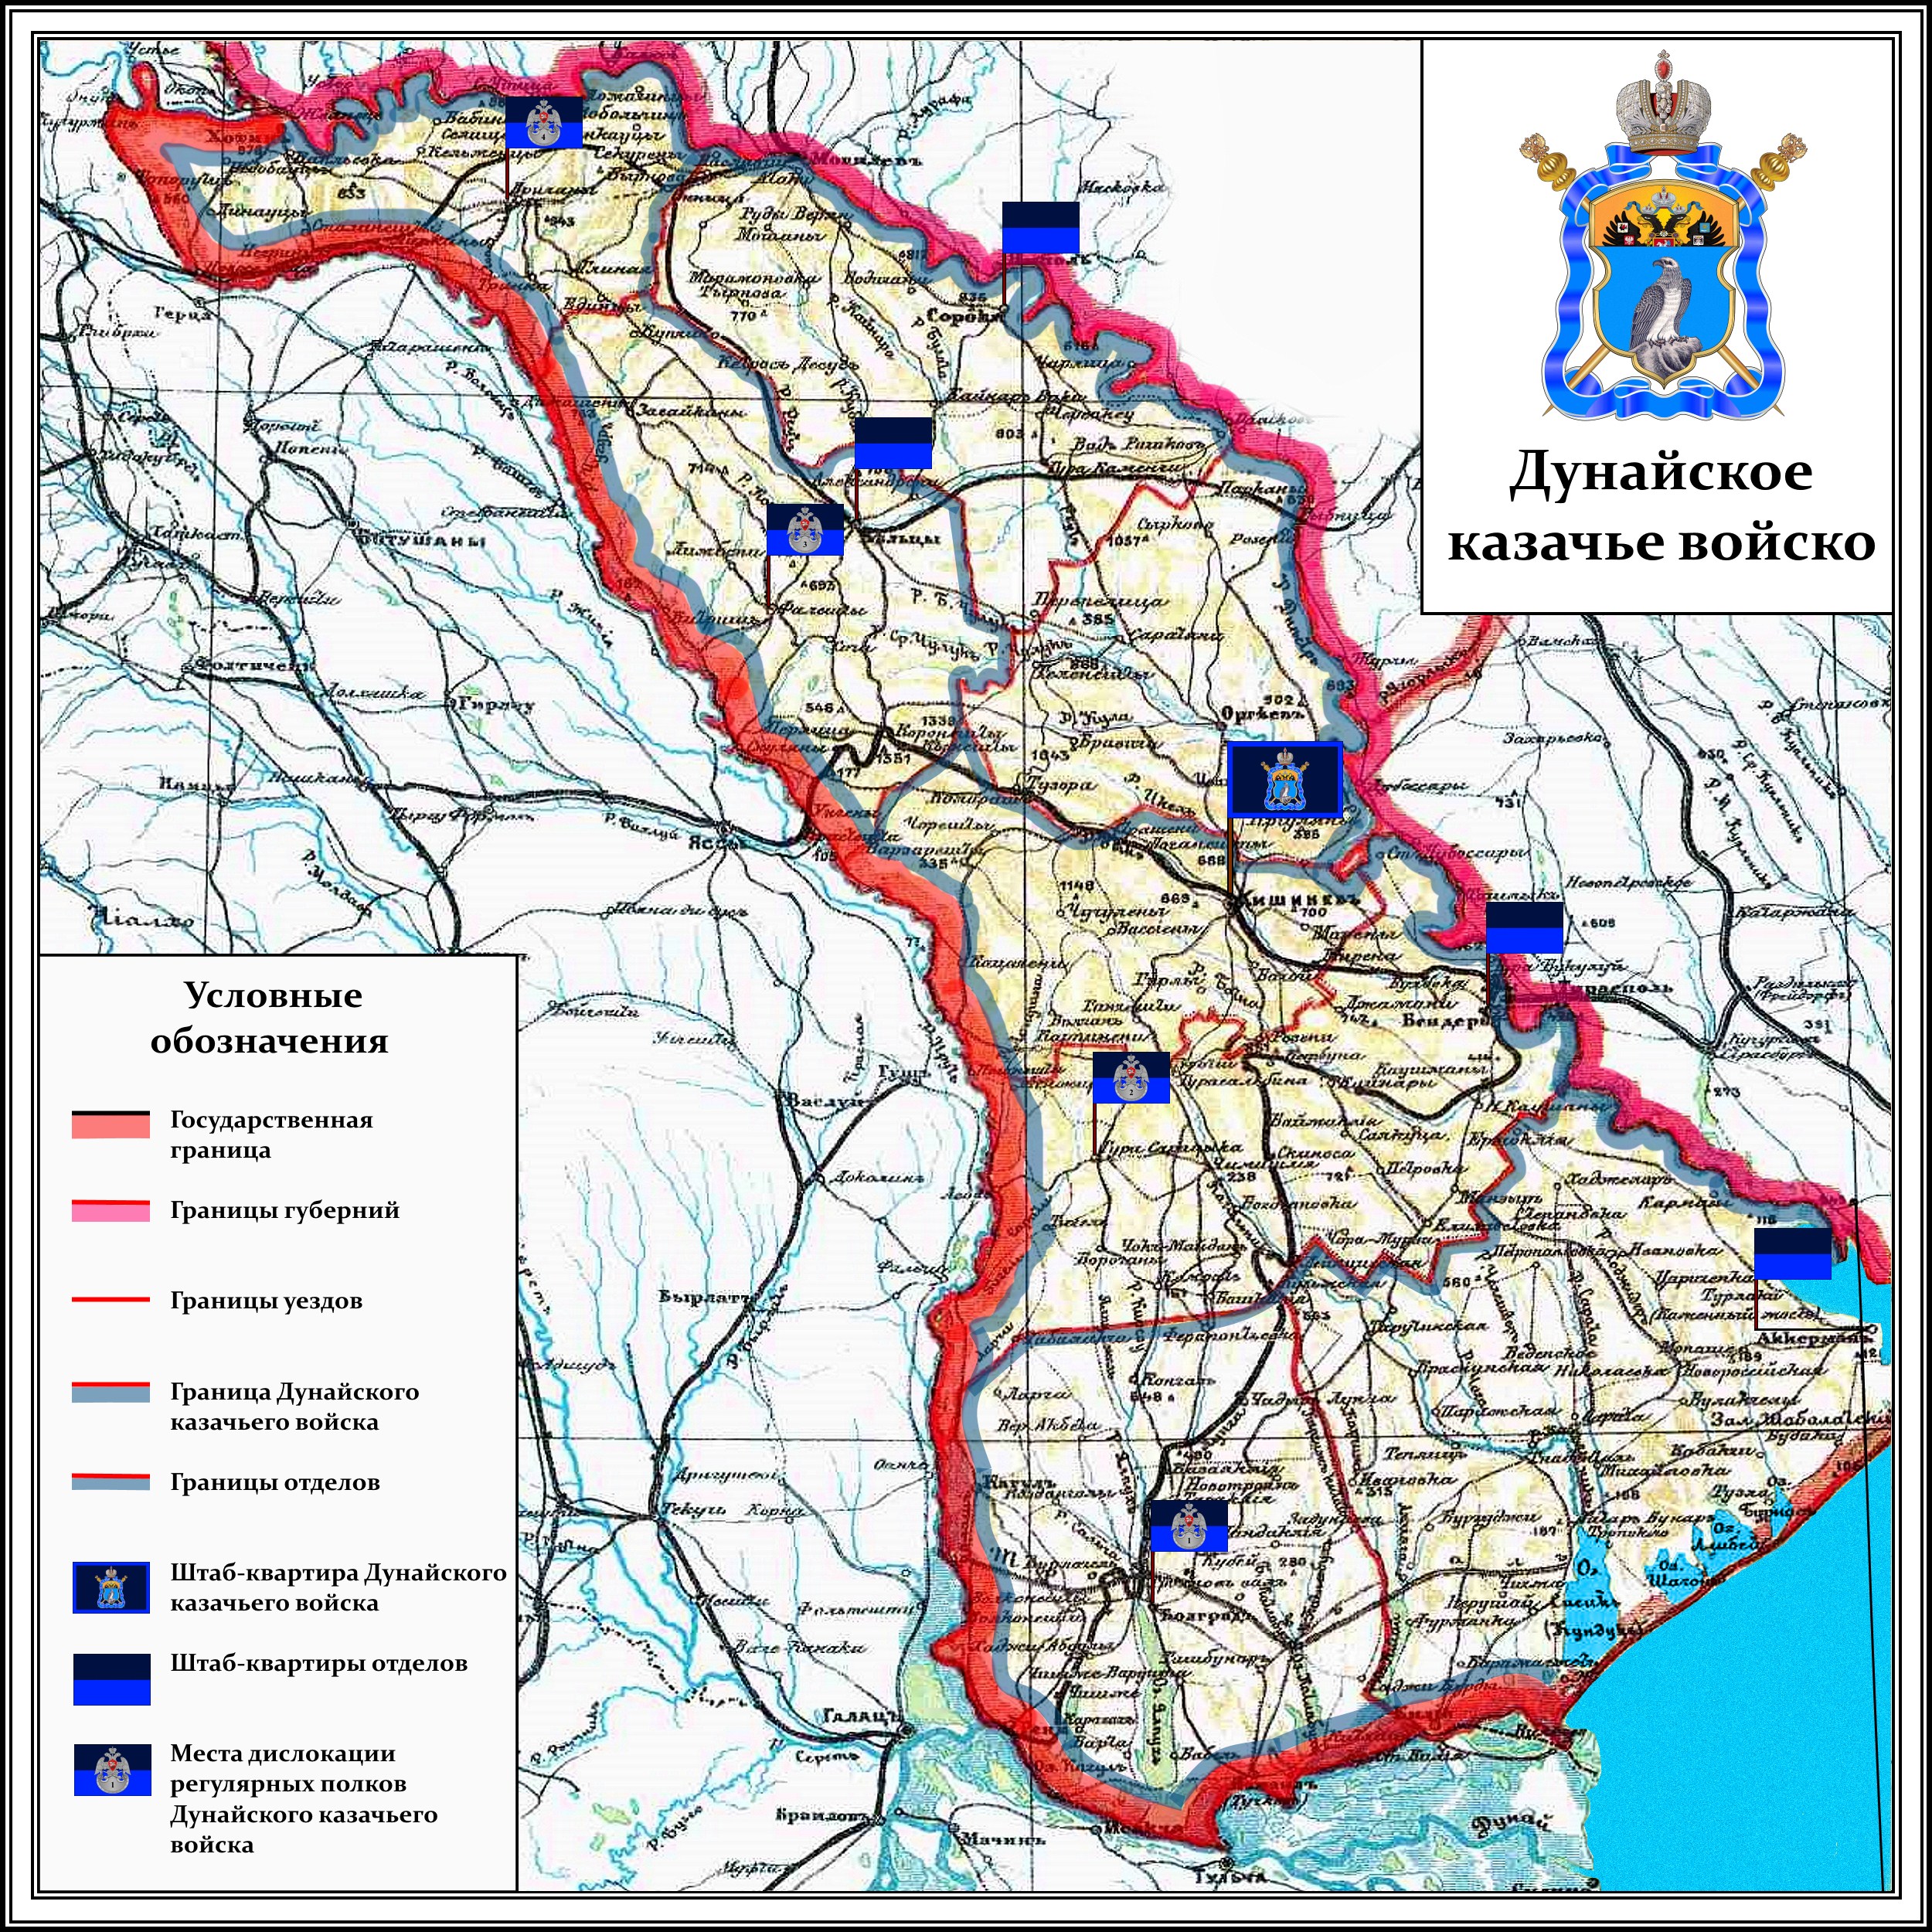 Дунайское казачье войско (карта)